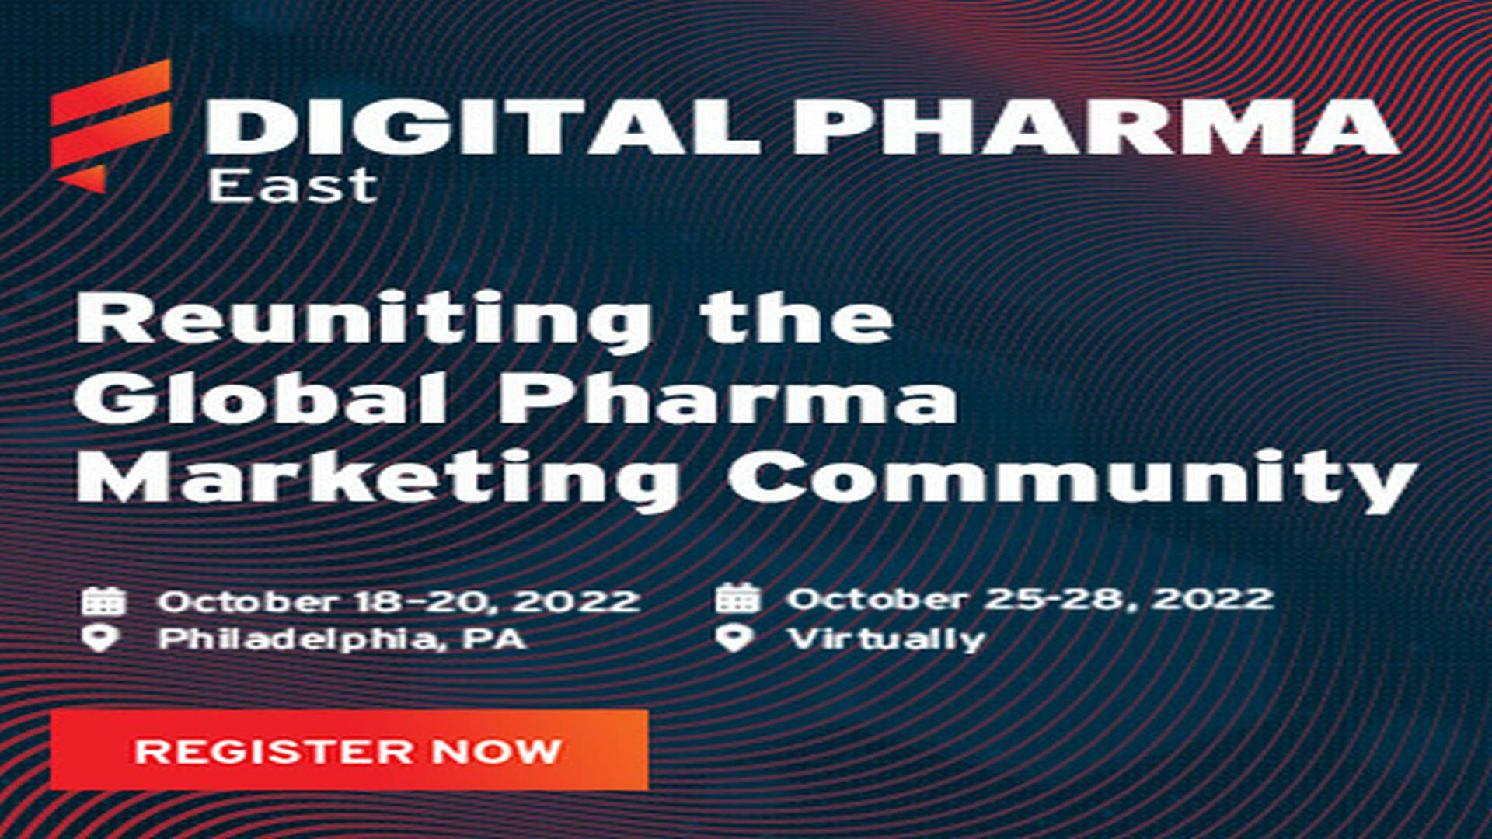 Digital Pharma East 2022 18 OCT 2022